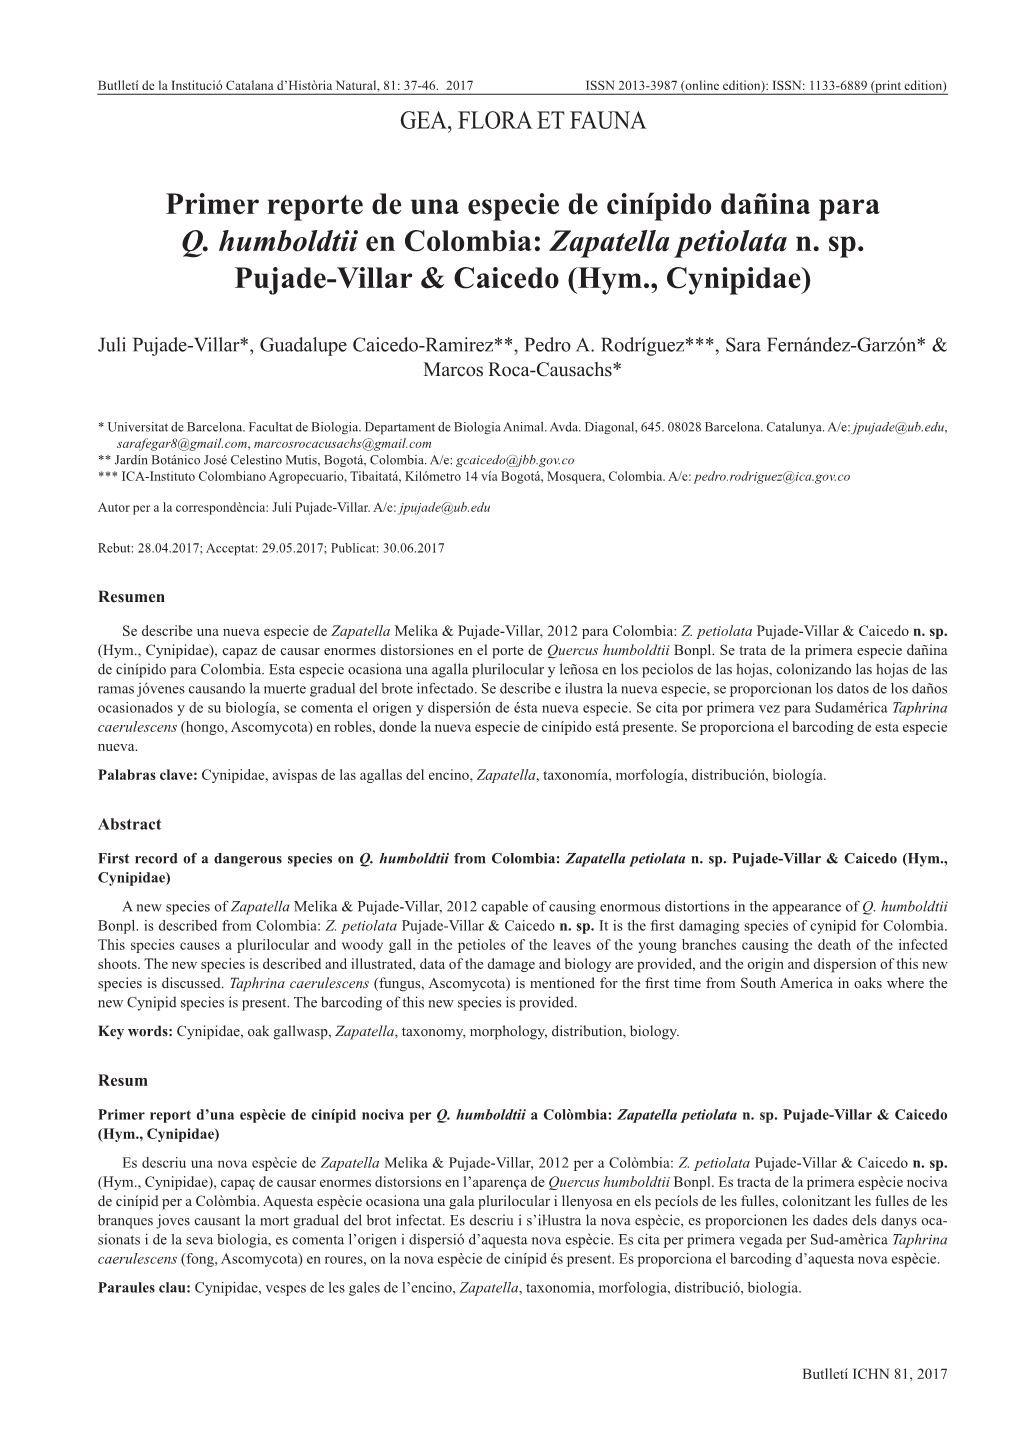 Primer Reporte De Una Especie De Cinípido Dañina Para Q. Humboldtii En Colombia: Zapatella Petiolata N. Sp. Pujade-Villar &